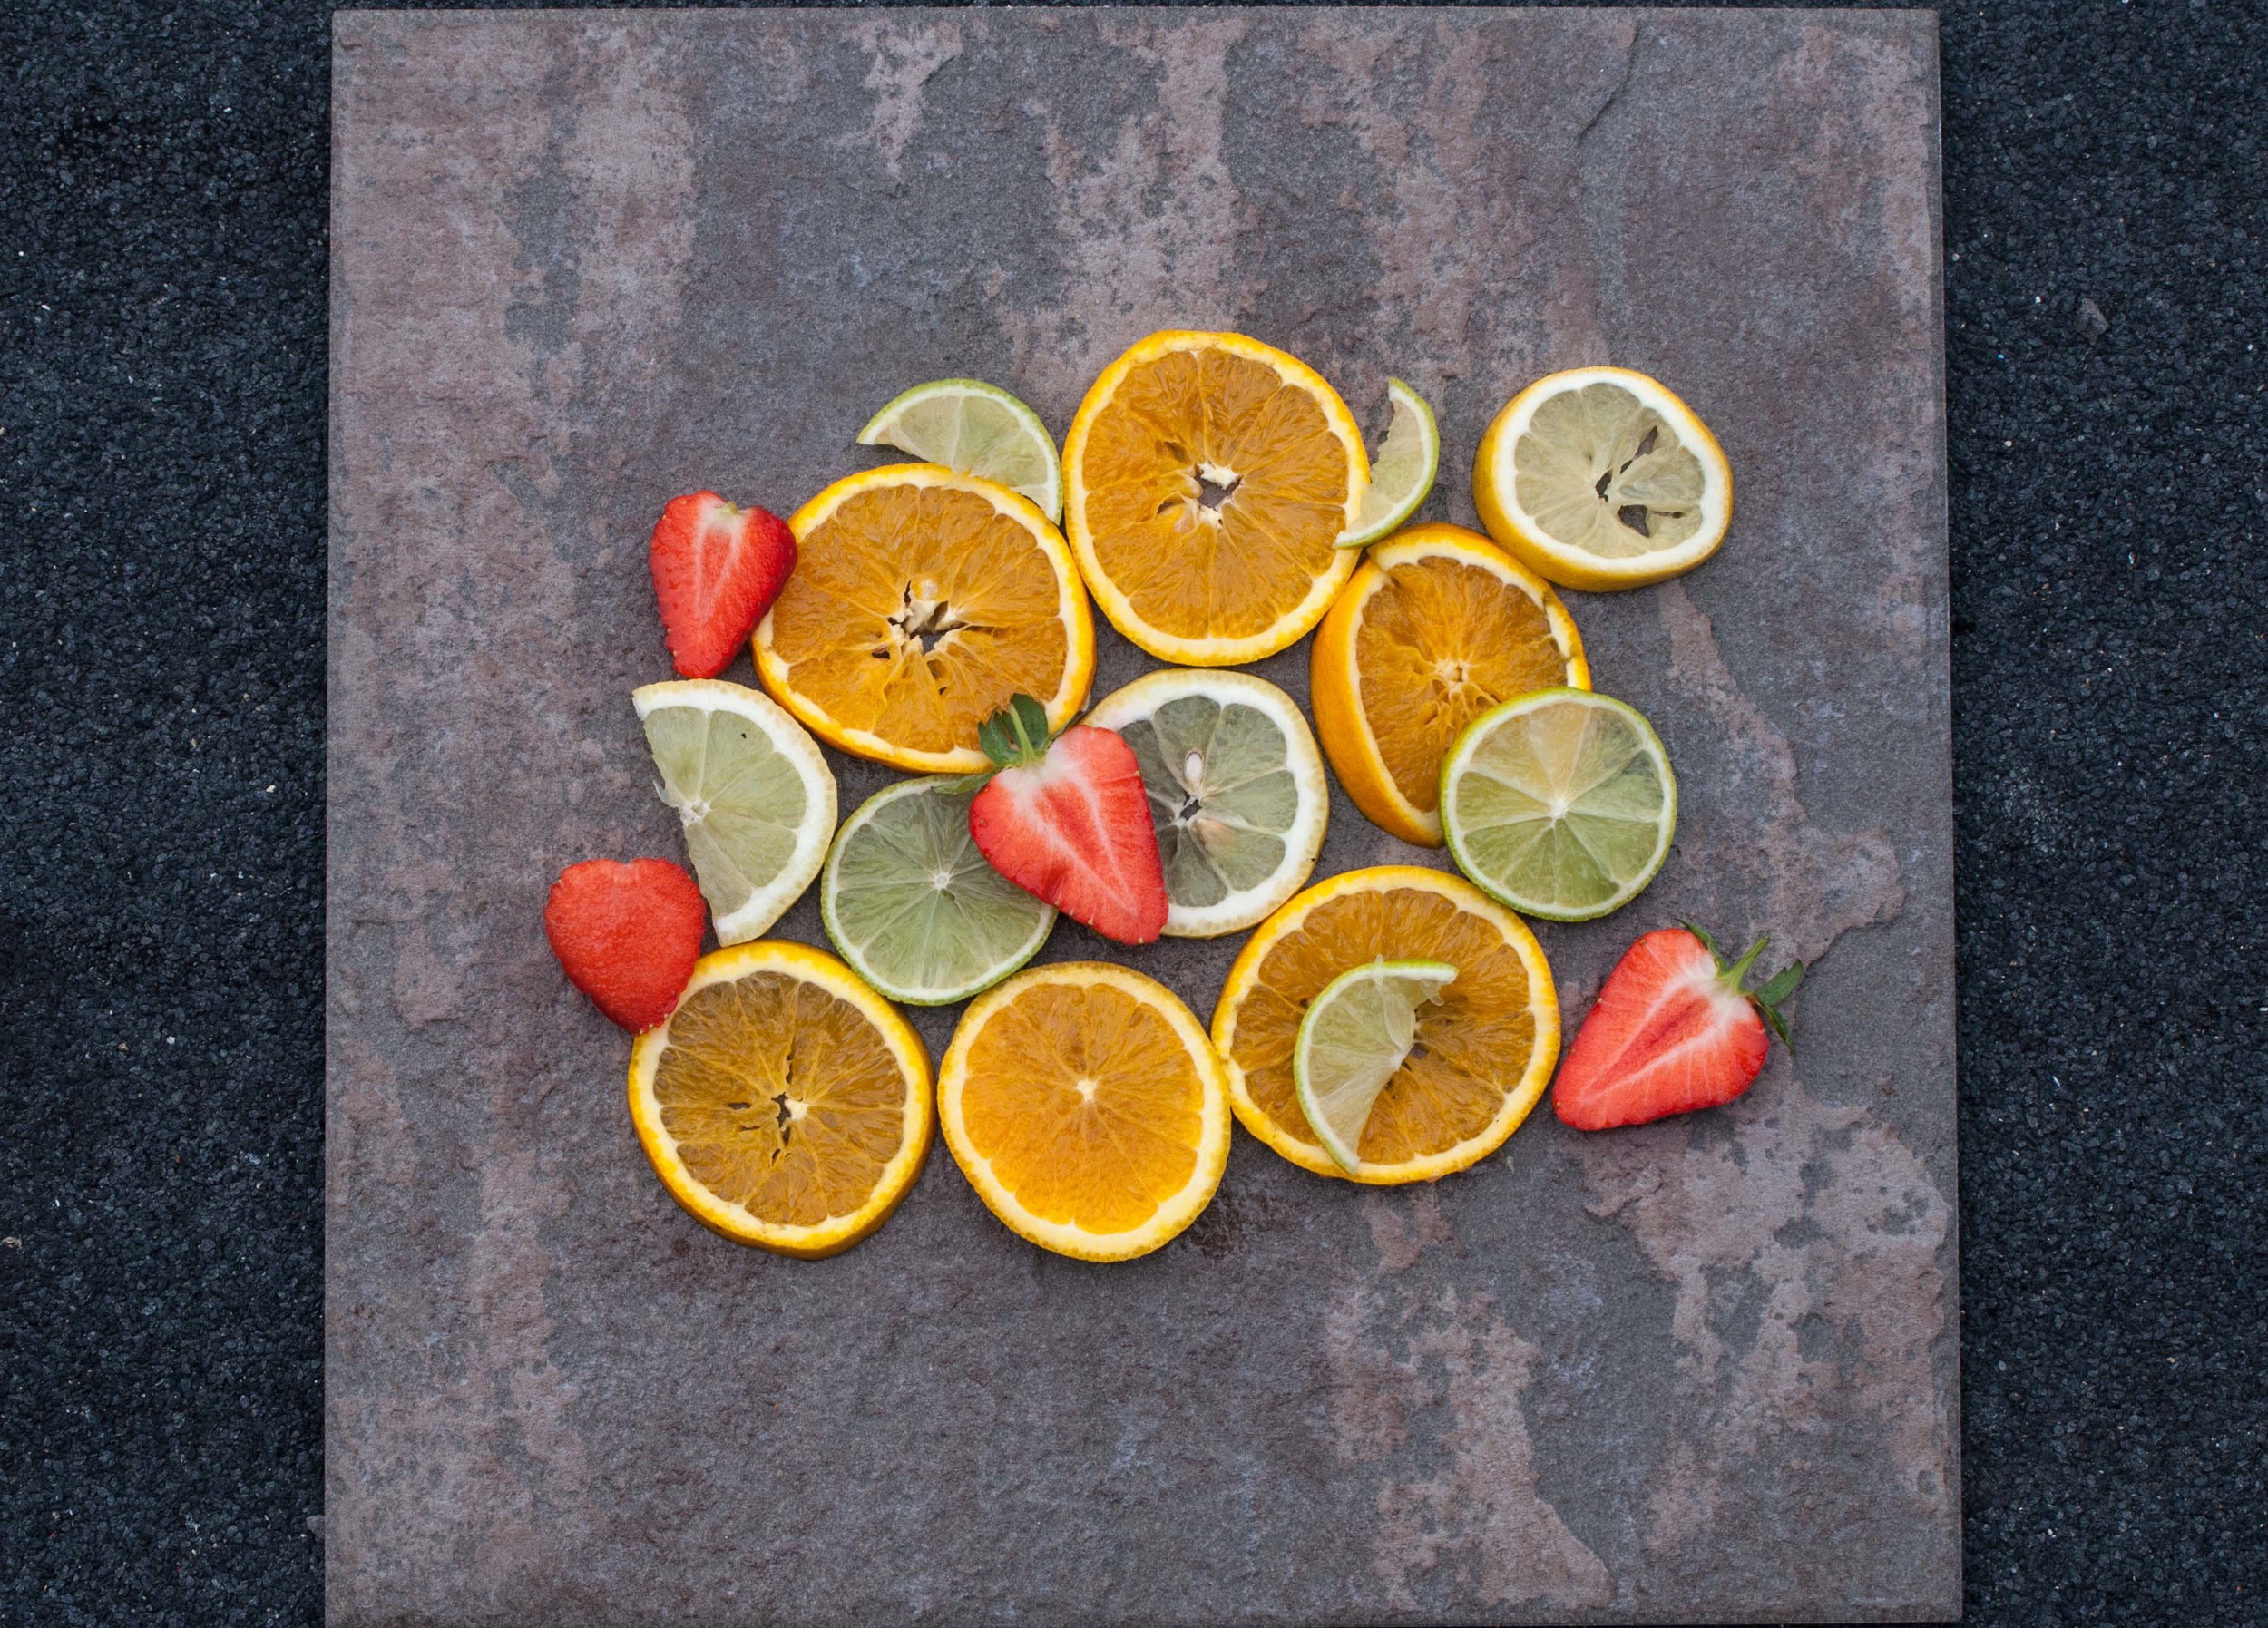 Strawberries, lemons and limes by Katie Vandyck.jpg